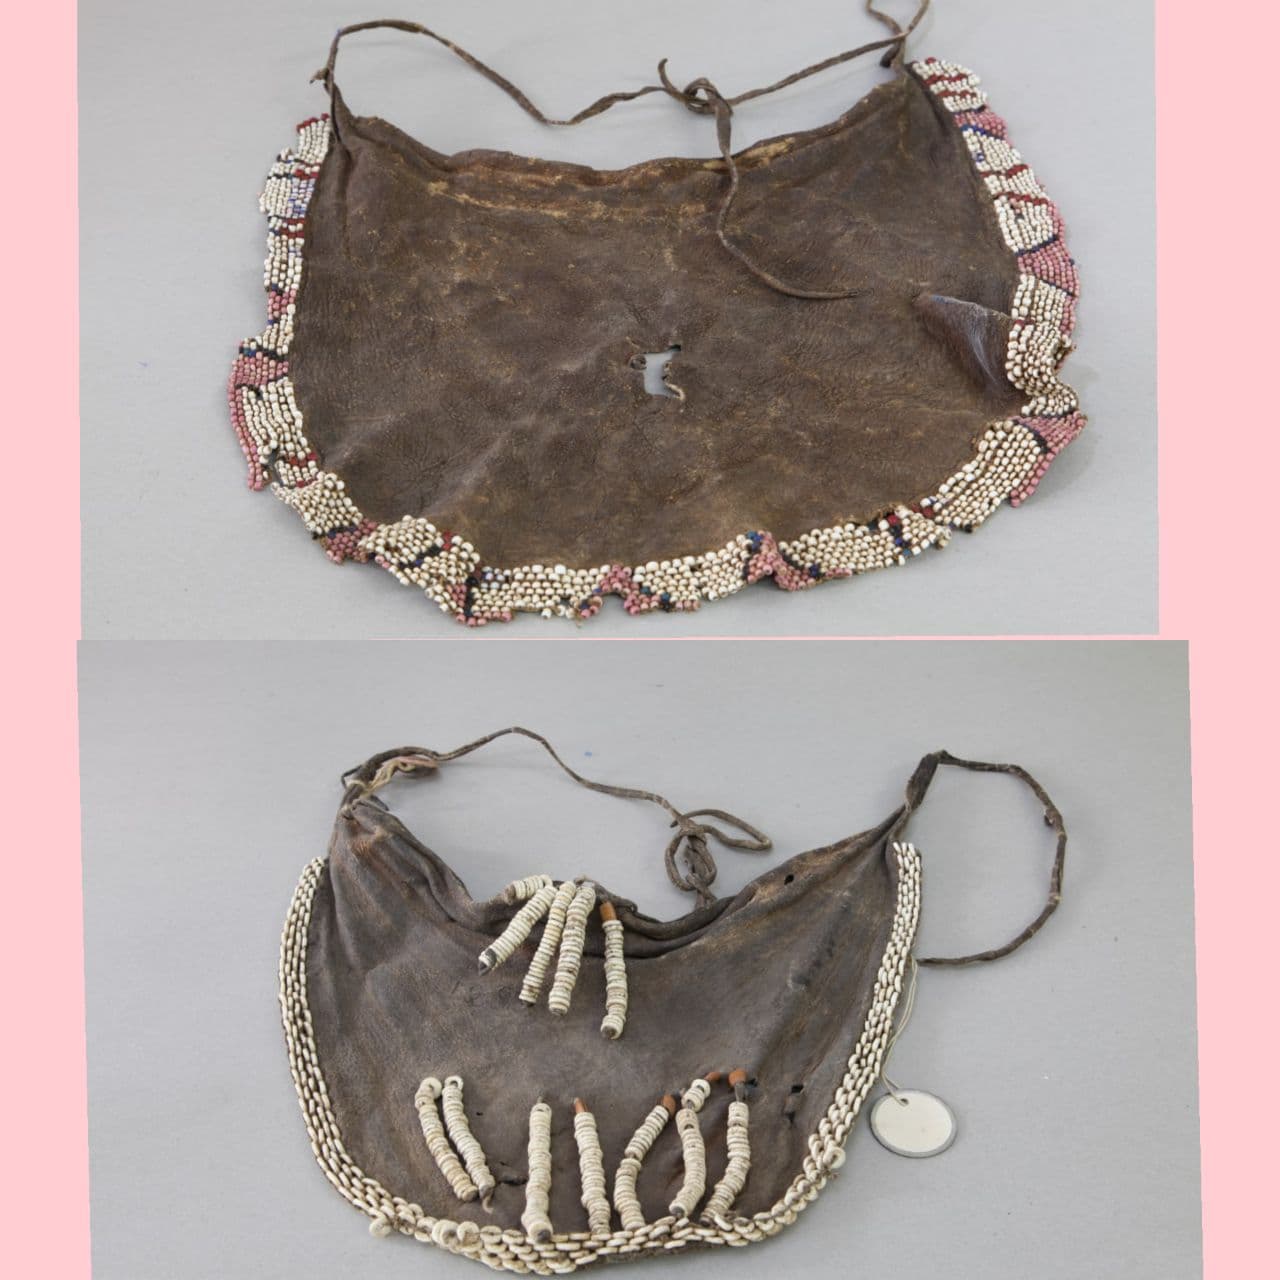 نام شی : پوشش زنان در قبیله ماسایی از جنس پوست ((the women clothing from skin in massai tribe/   موزه برادران امیدوار